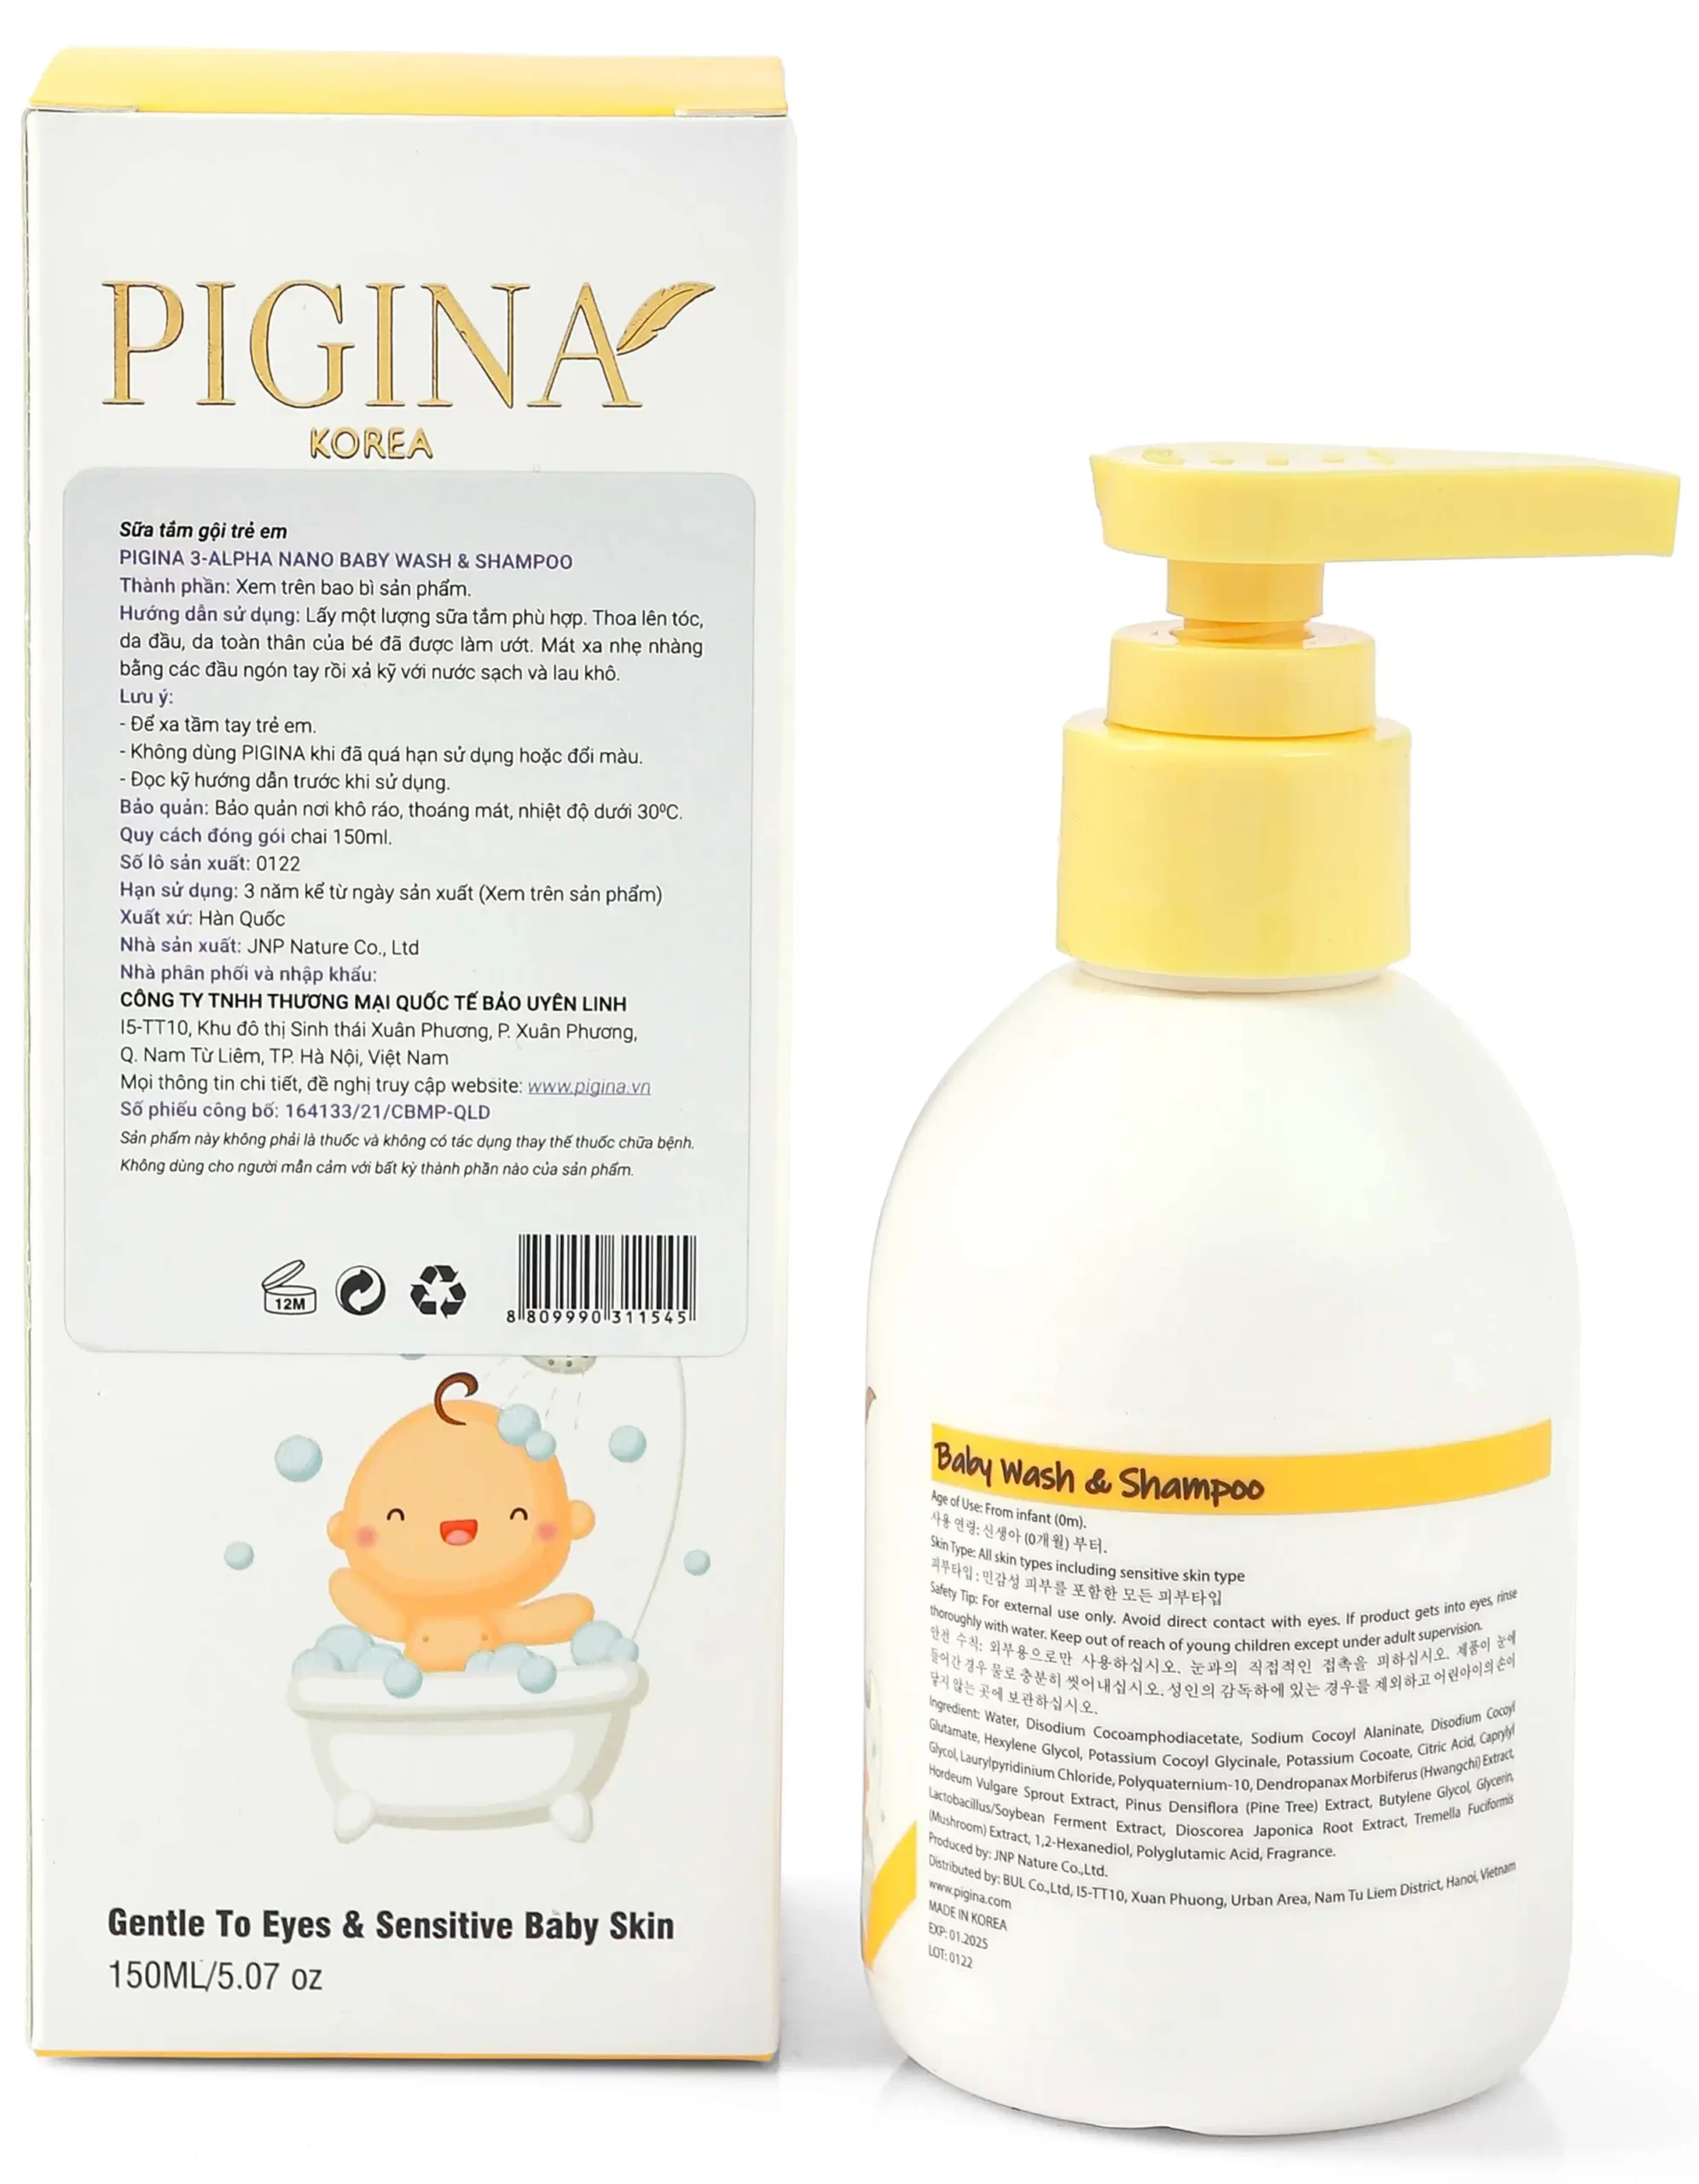 Thông tin hộp Sữa tắm gội toàn thân cho bé Pigina Baby Wash & Shampoo chính hãng giá tốt - Droppii Shops